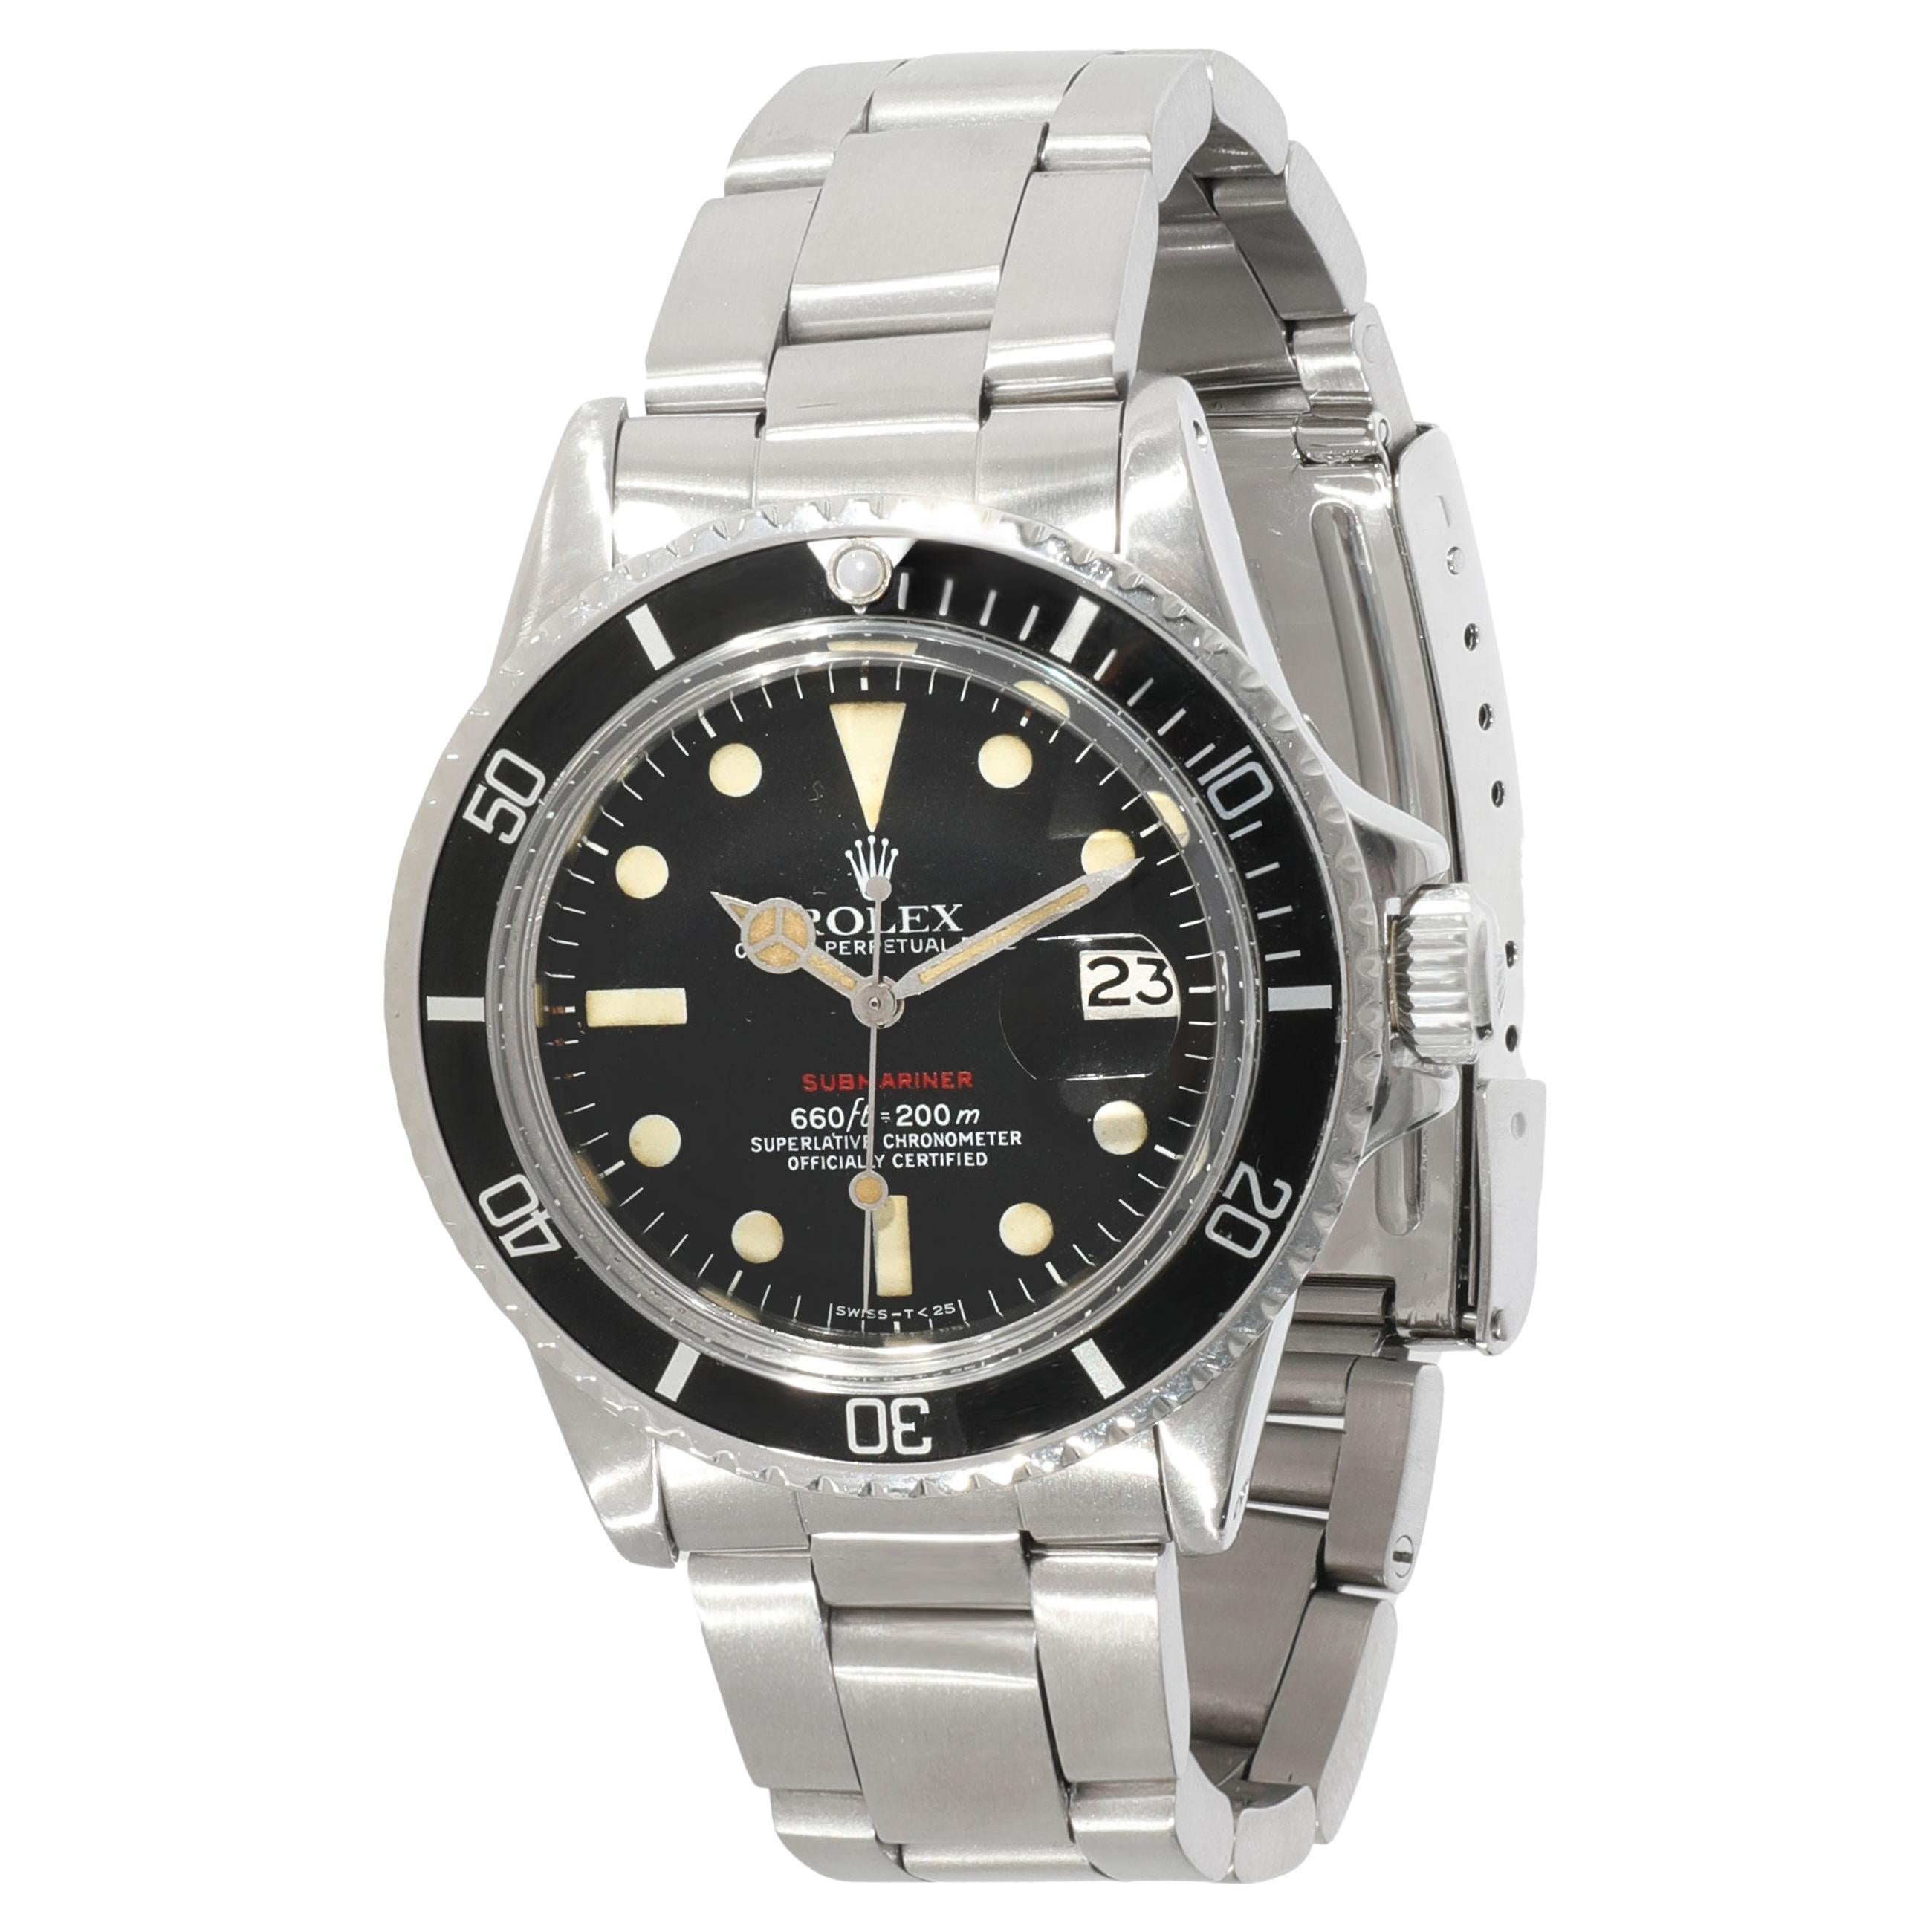 Rolex Submariner 1608 Men's Watch in Stainless Steel